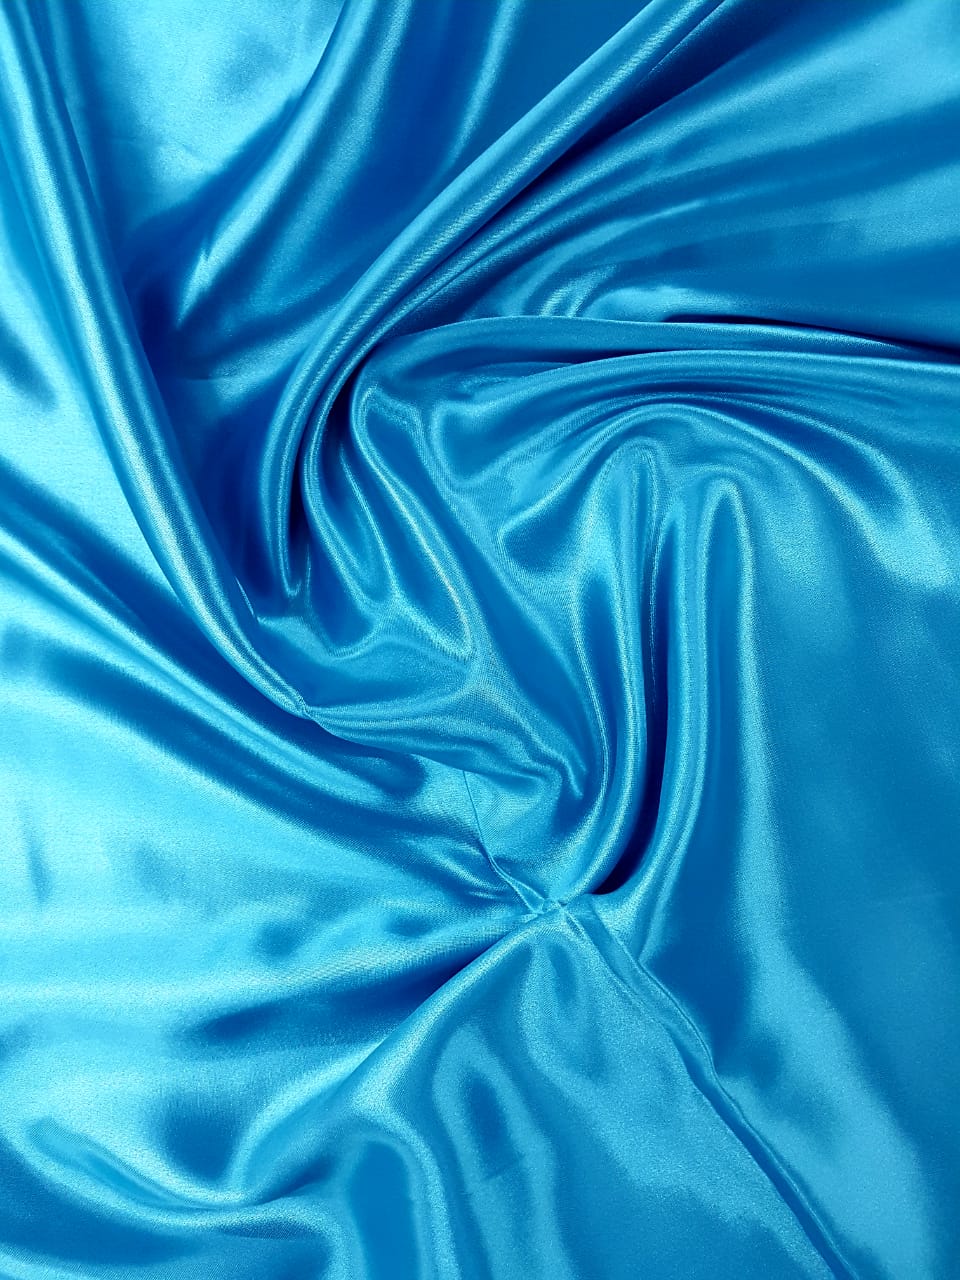 Tecido Cetim azul.